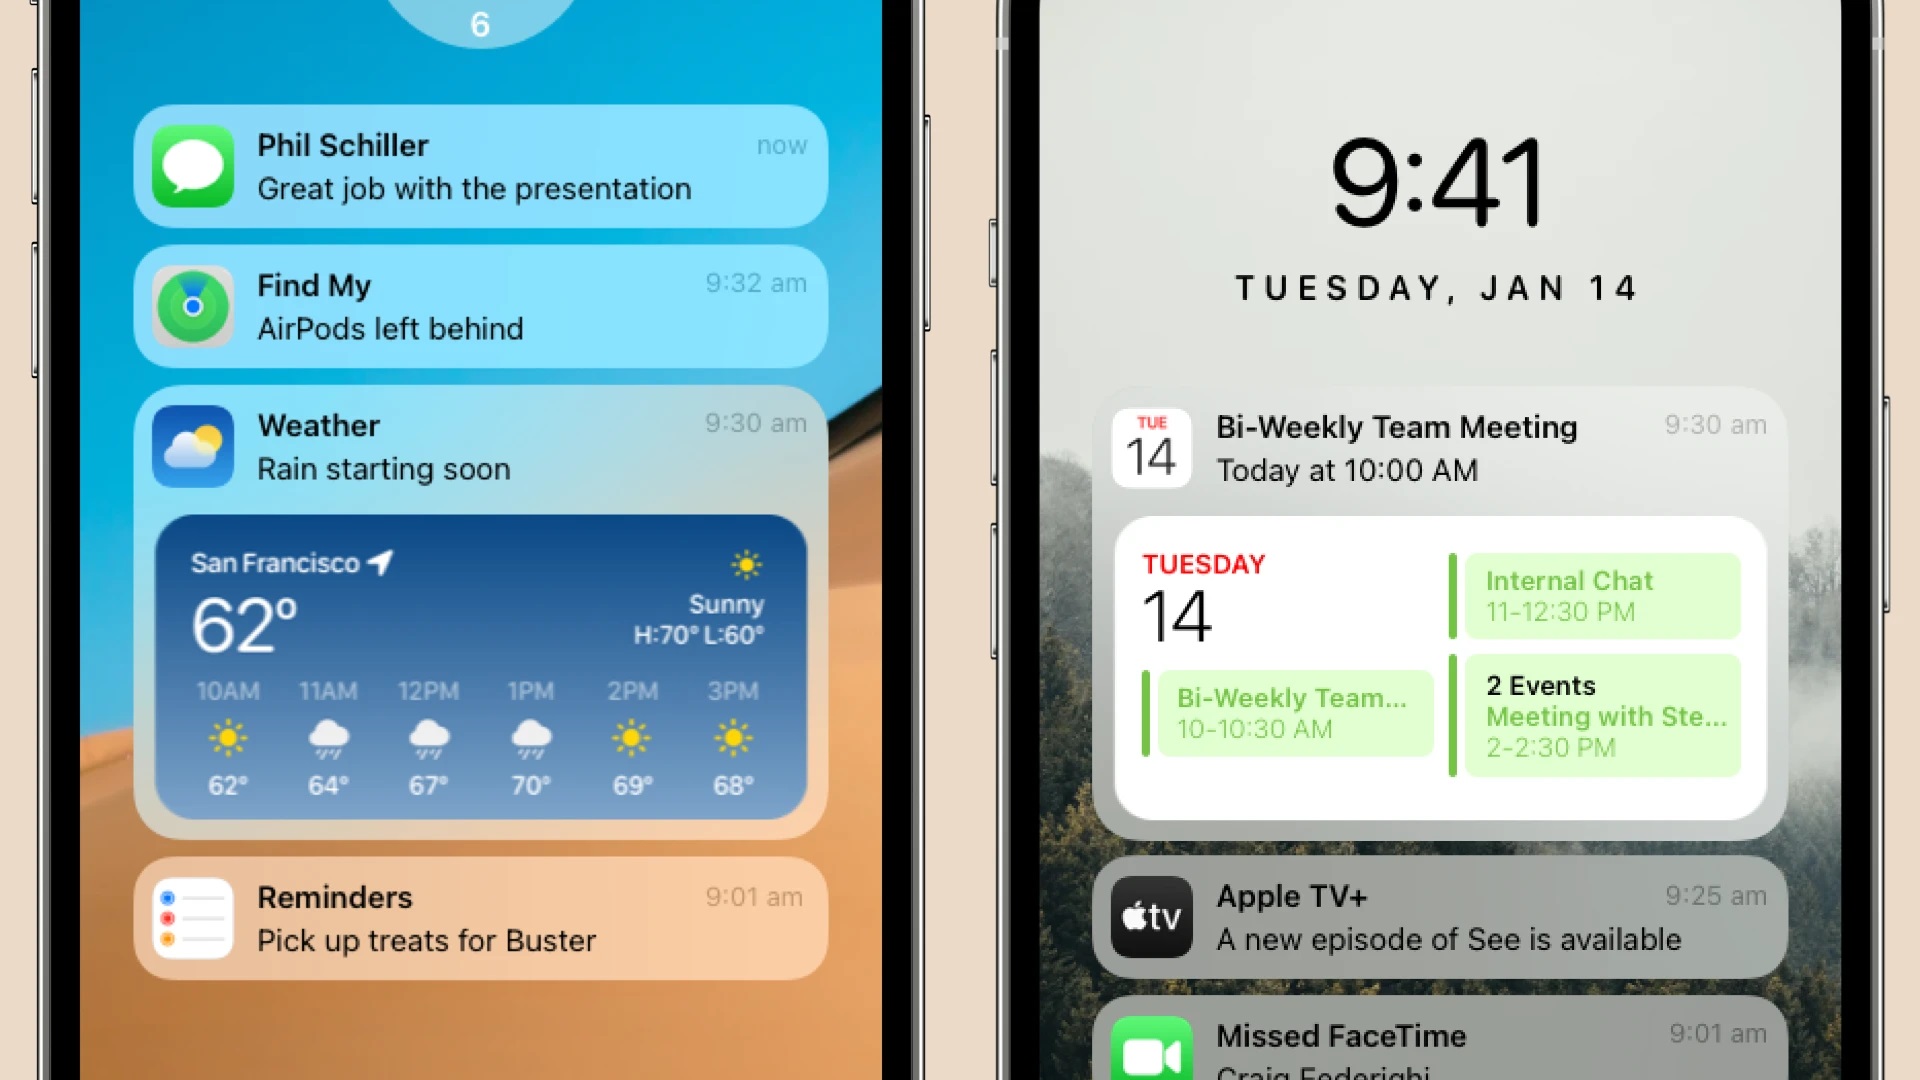 Thiết kế màn hình khóa iOS mới với giao diện tối giản và đẹp mắt sẽ giúp bạn có một trải nghiệm tốt hơn khi sử dụng iPhone của mình. Tính năng mới bao gồm thông báo thông minh, tùy chỉnh âm thanh và khóa màn hình độc đáo sẽ giúp bạn tối ưu hiệu suất khi sử dụng thiết bị của mình.